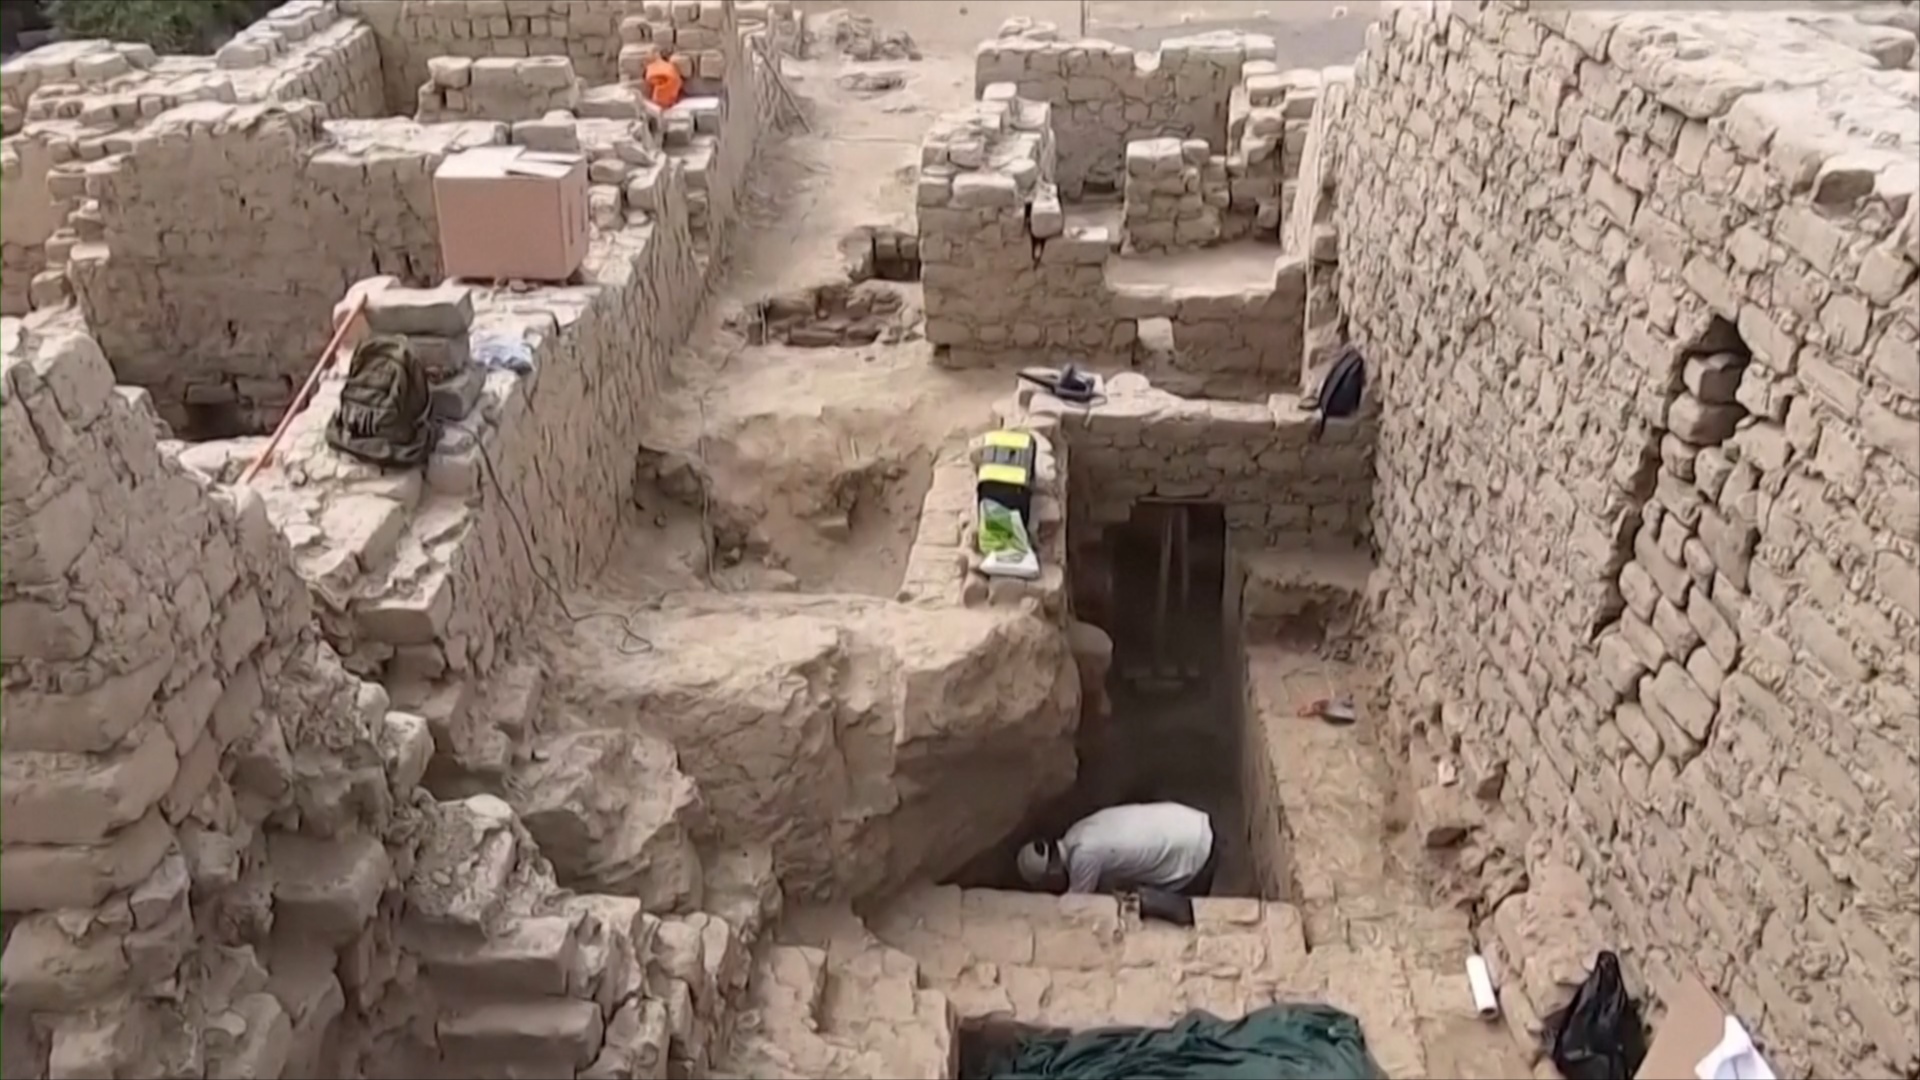 Семь древних захоронений времён культуры Уари нашли в Перу